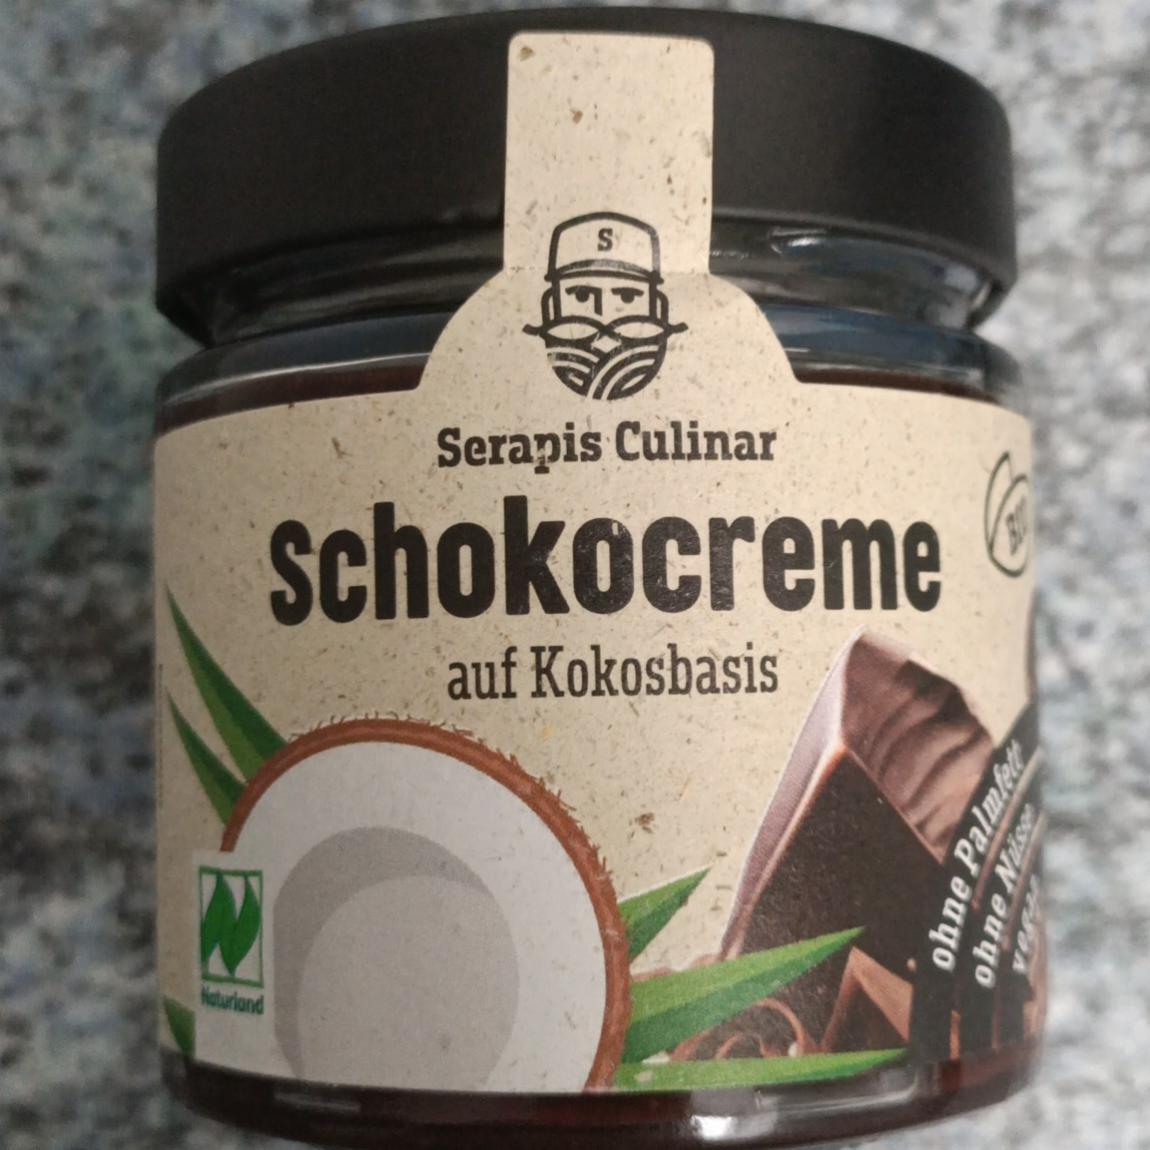 Фото - Крем шоколадный с кокосом Schokocreme auf Kokosbasis Serapis Culinar